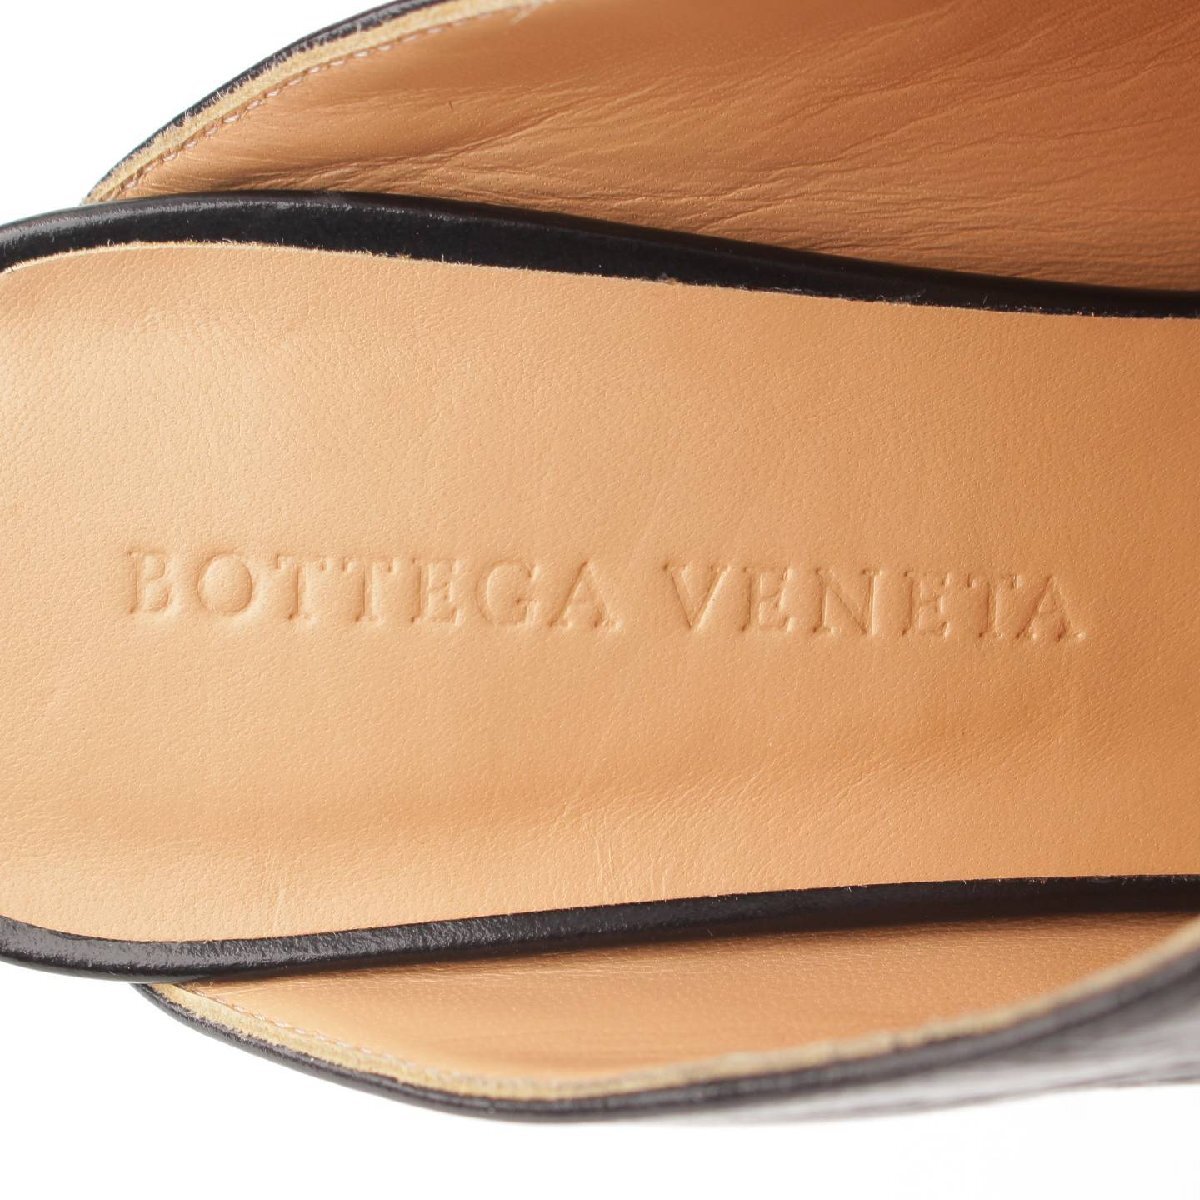 【ボッテガ ヴェネタ】Bottega Veneta　スクエアトゥ レザー ミュール サンダル 578329 ブラック 36 未使用【中古】【正規品保証】203841_画像6